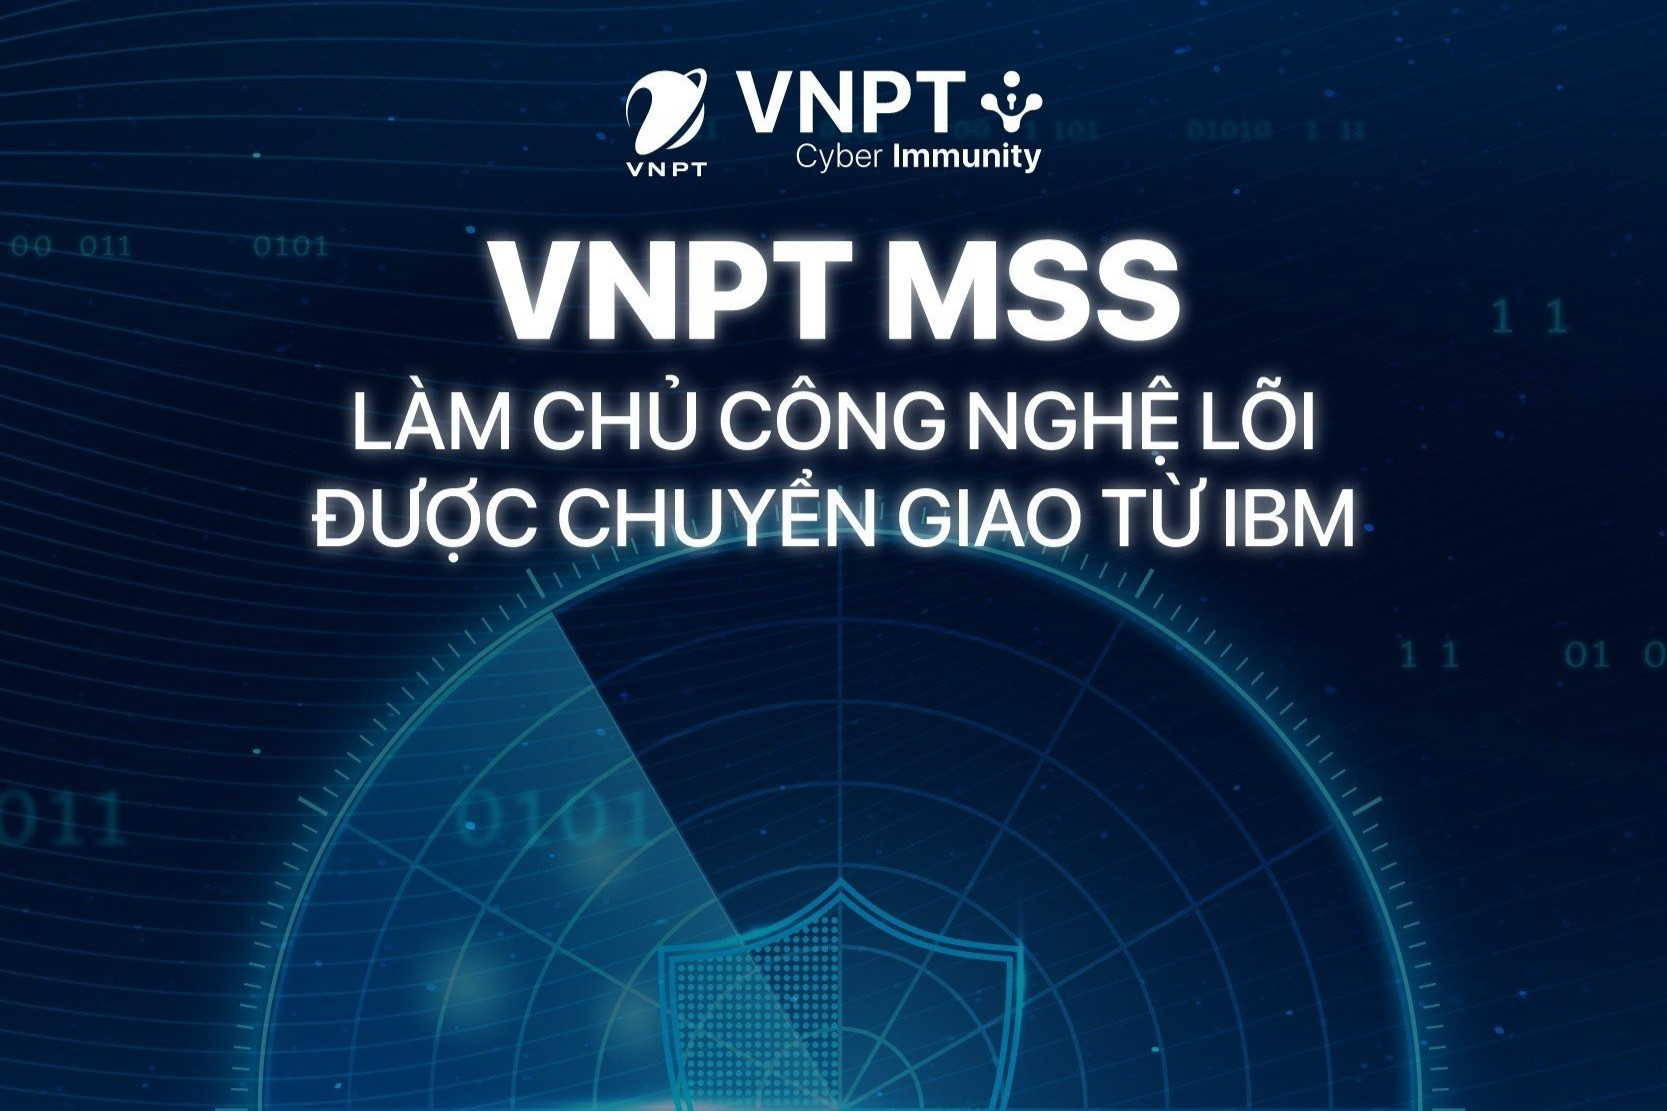 VNPT MSS - Nền tảng quản lý an toàn thông tin không sử dụng mã nguồn mở